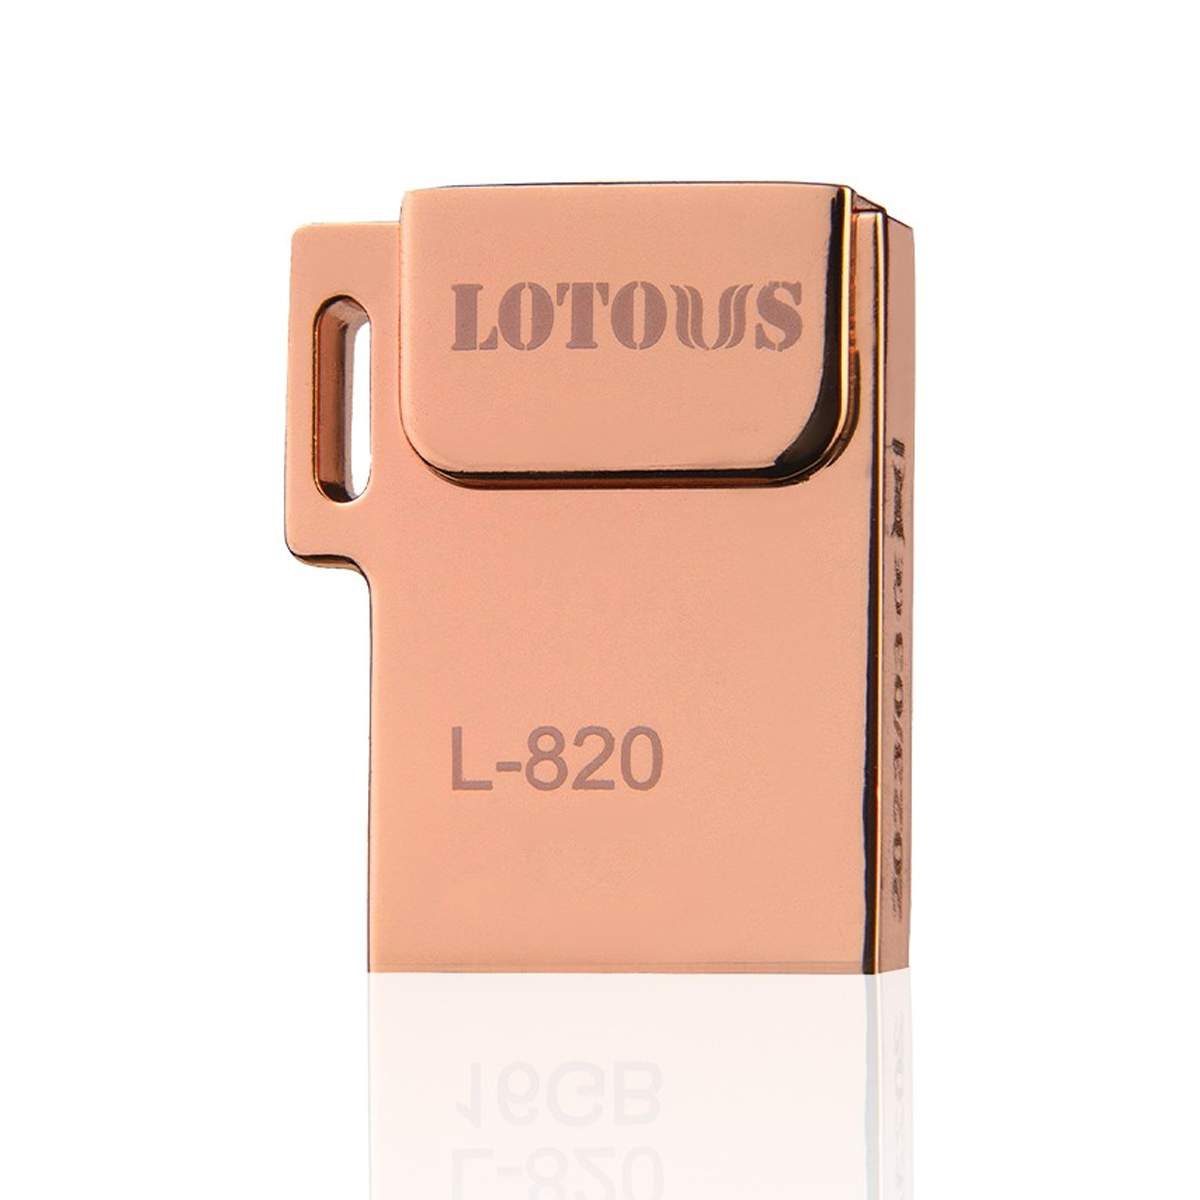 فلش مموری لوتوس مدل L-820 ظرفیت 32 گیگابایت